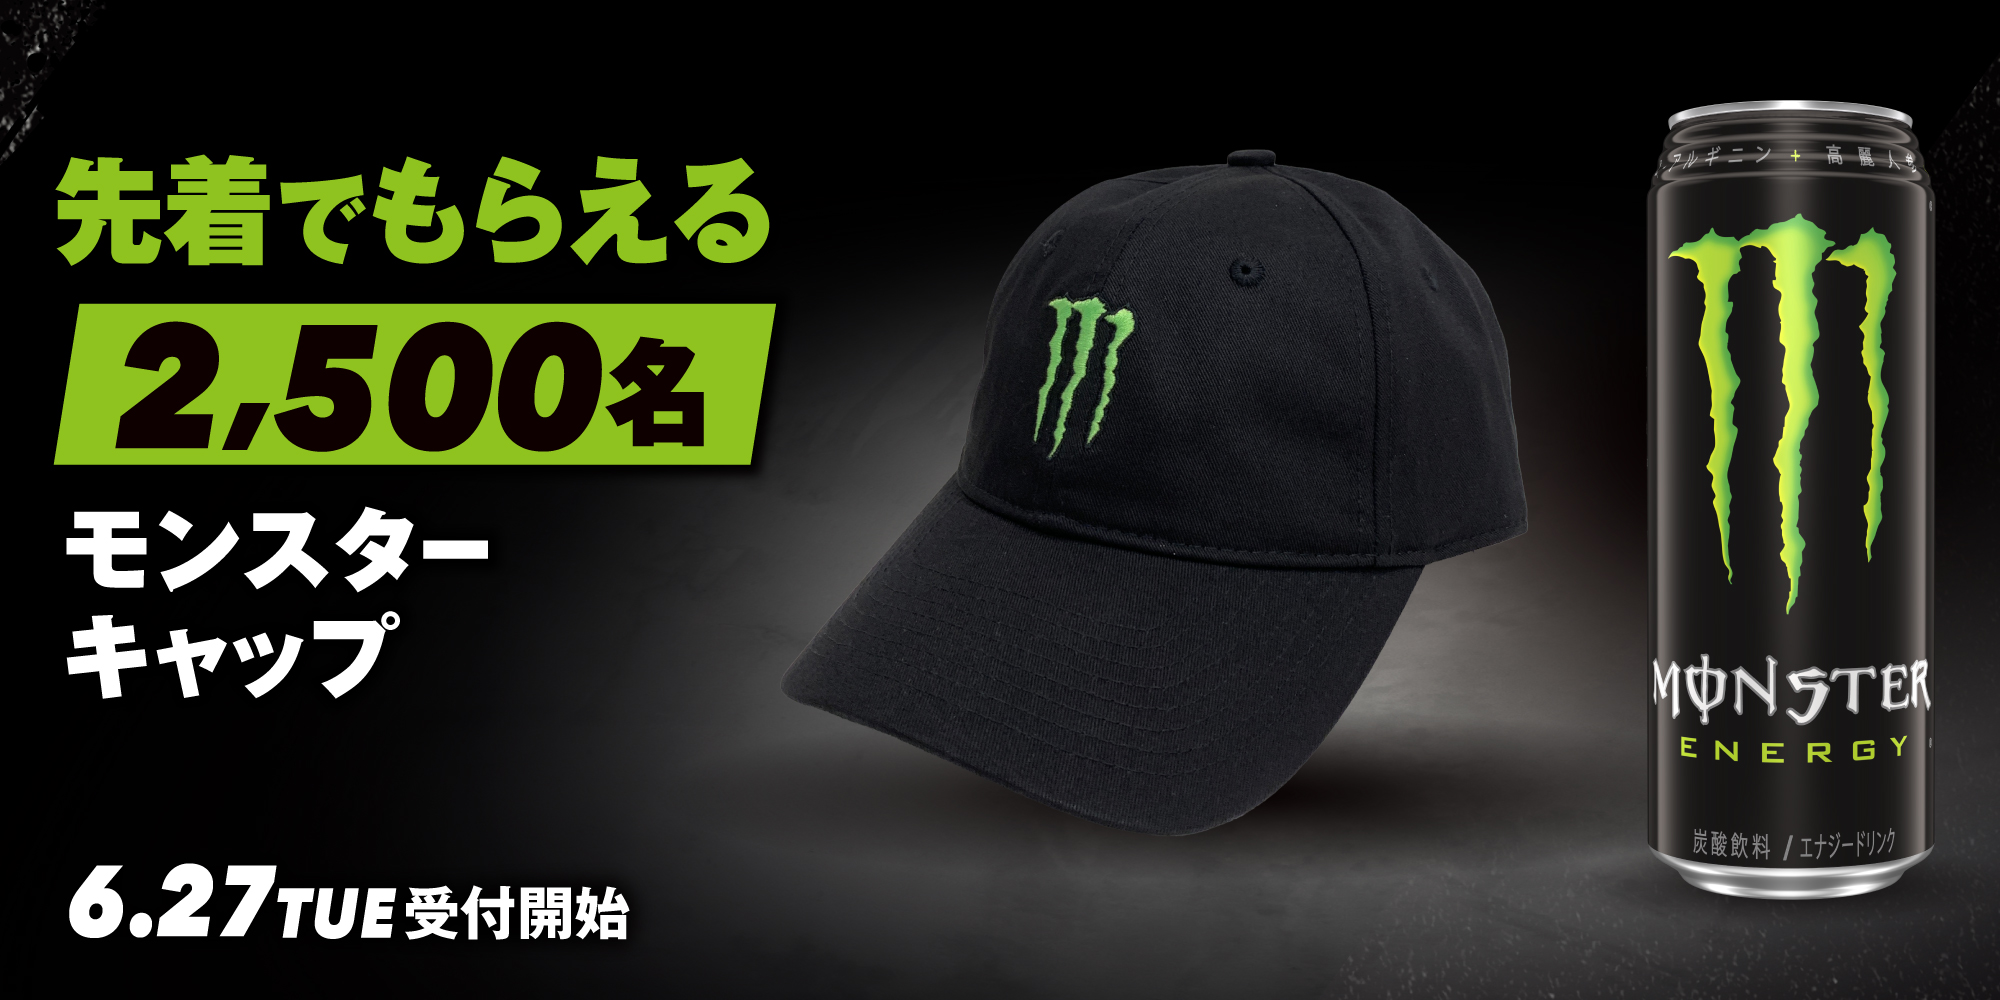 Monster Energy Japan on X: 